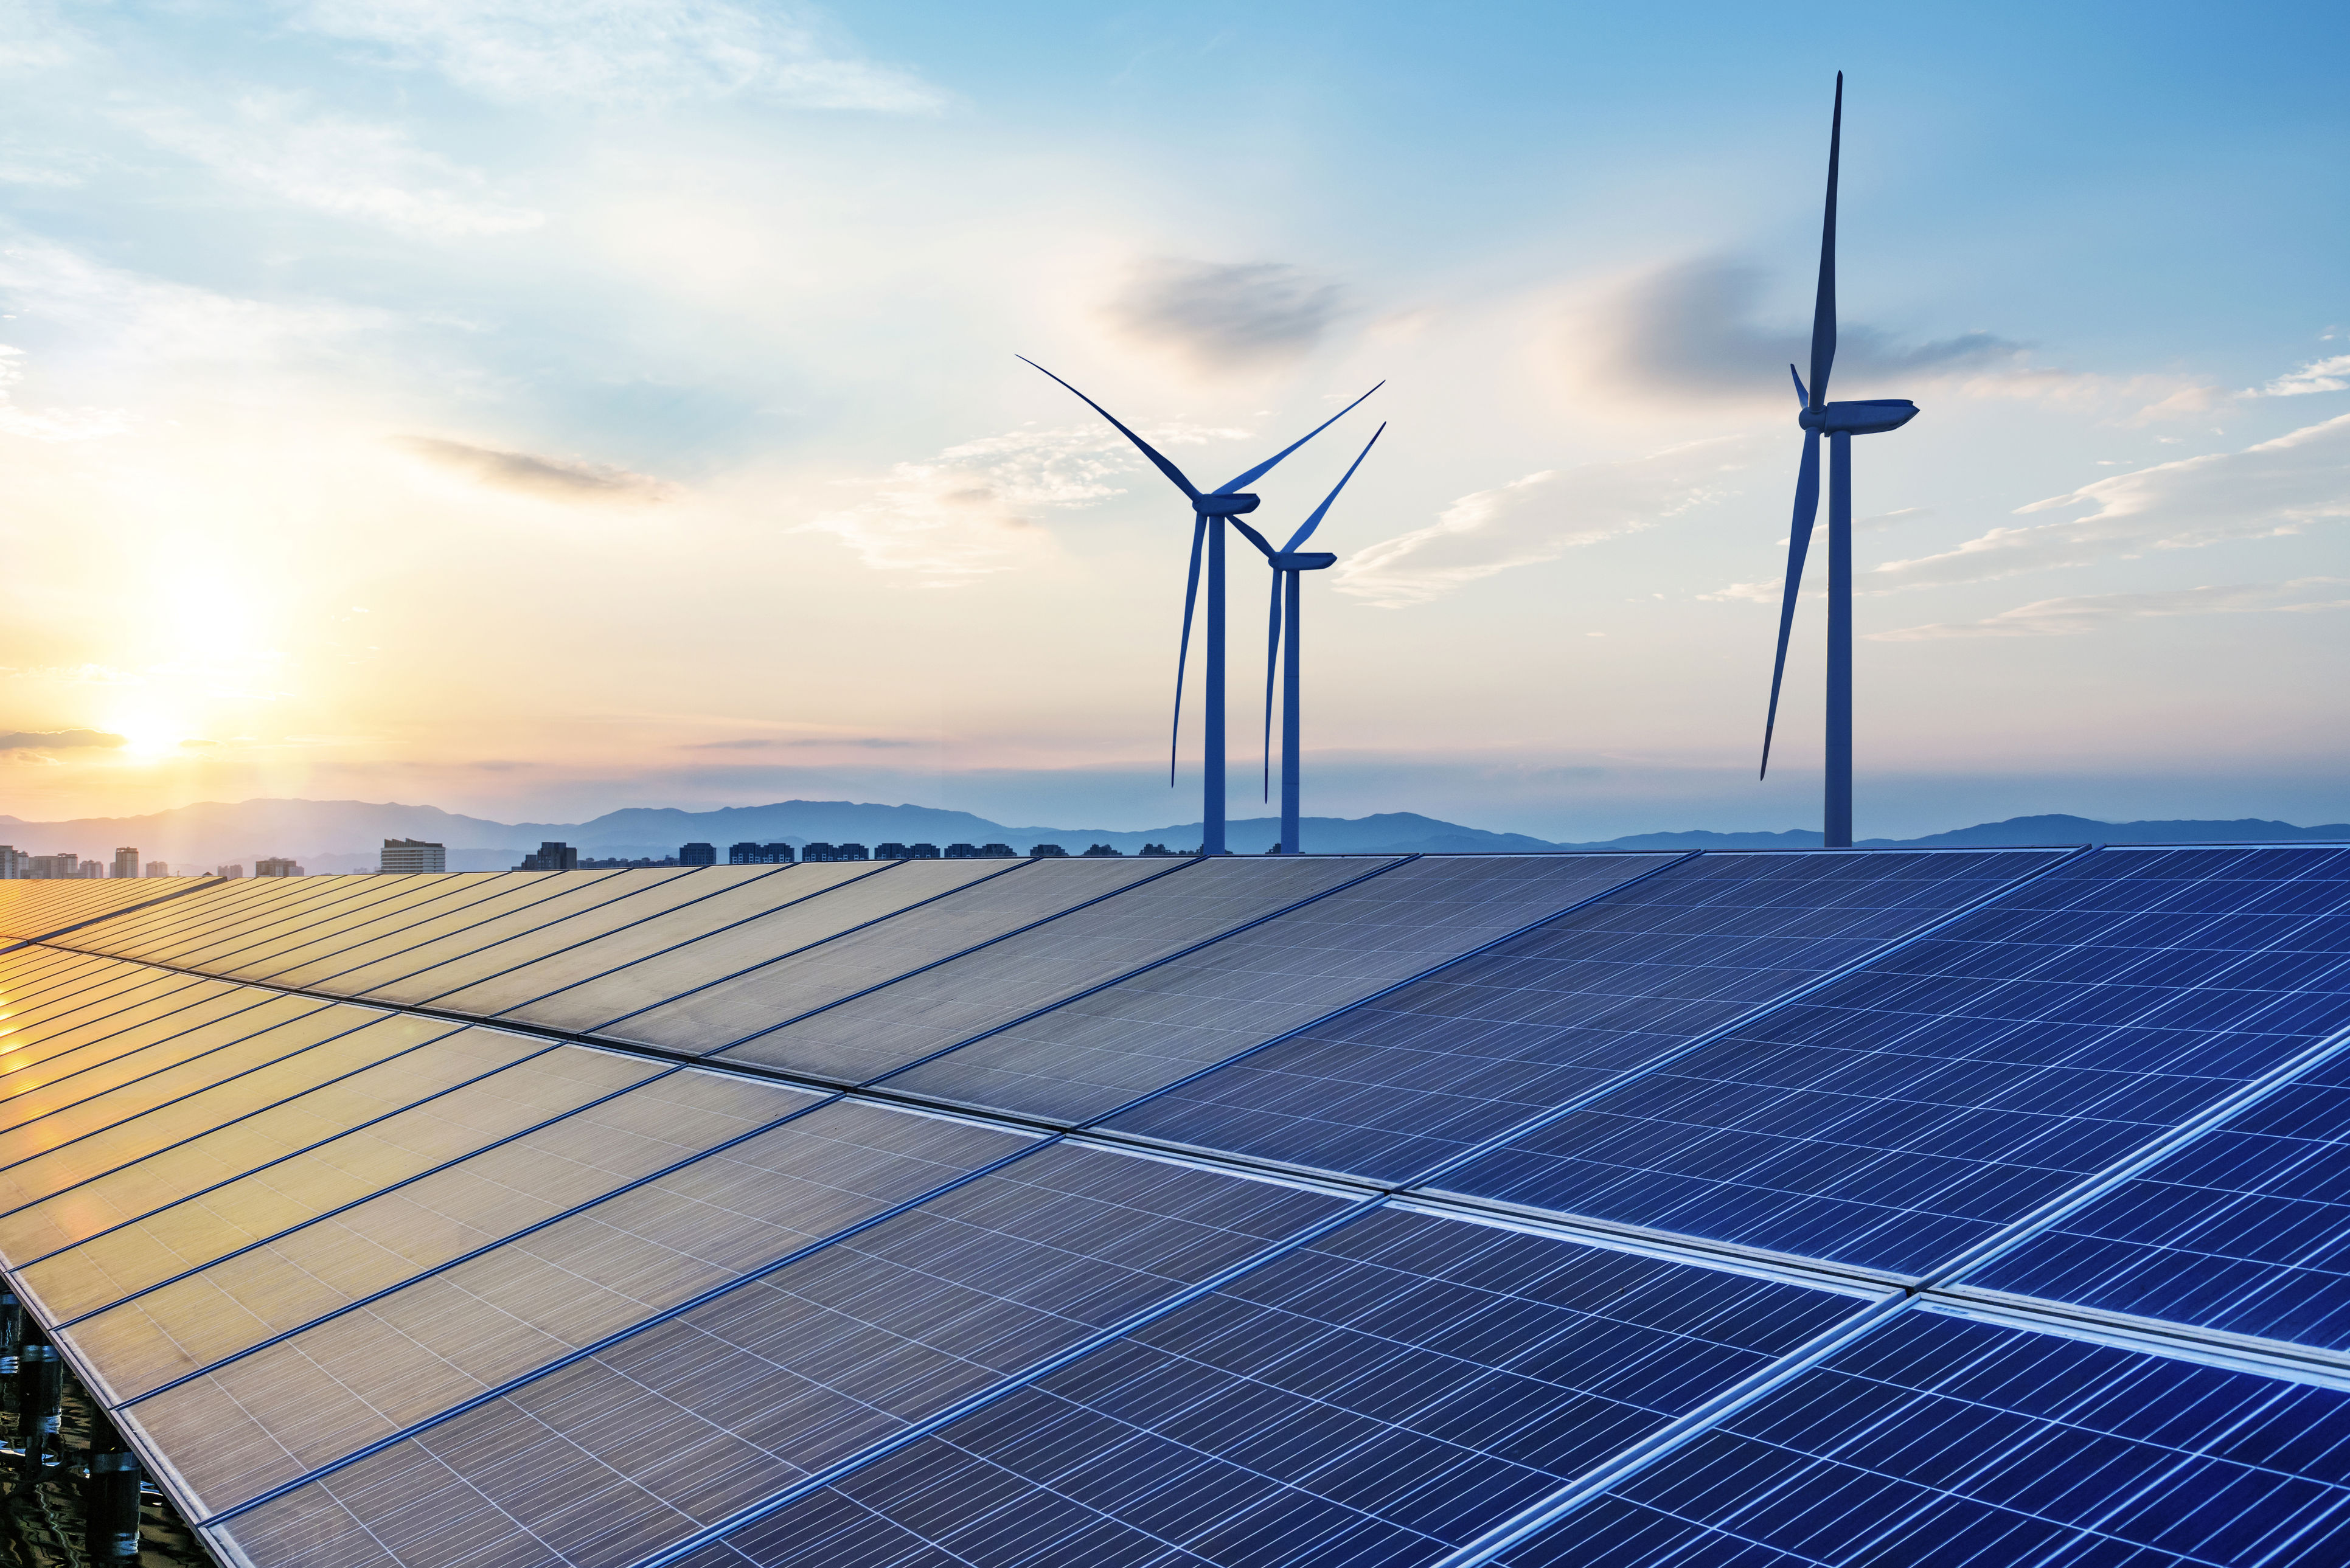 ACEN targets 8 GW  renewables portfolio 